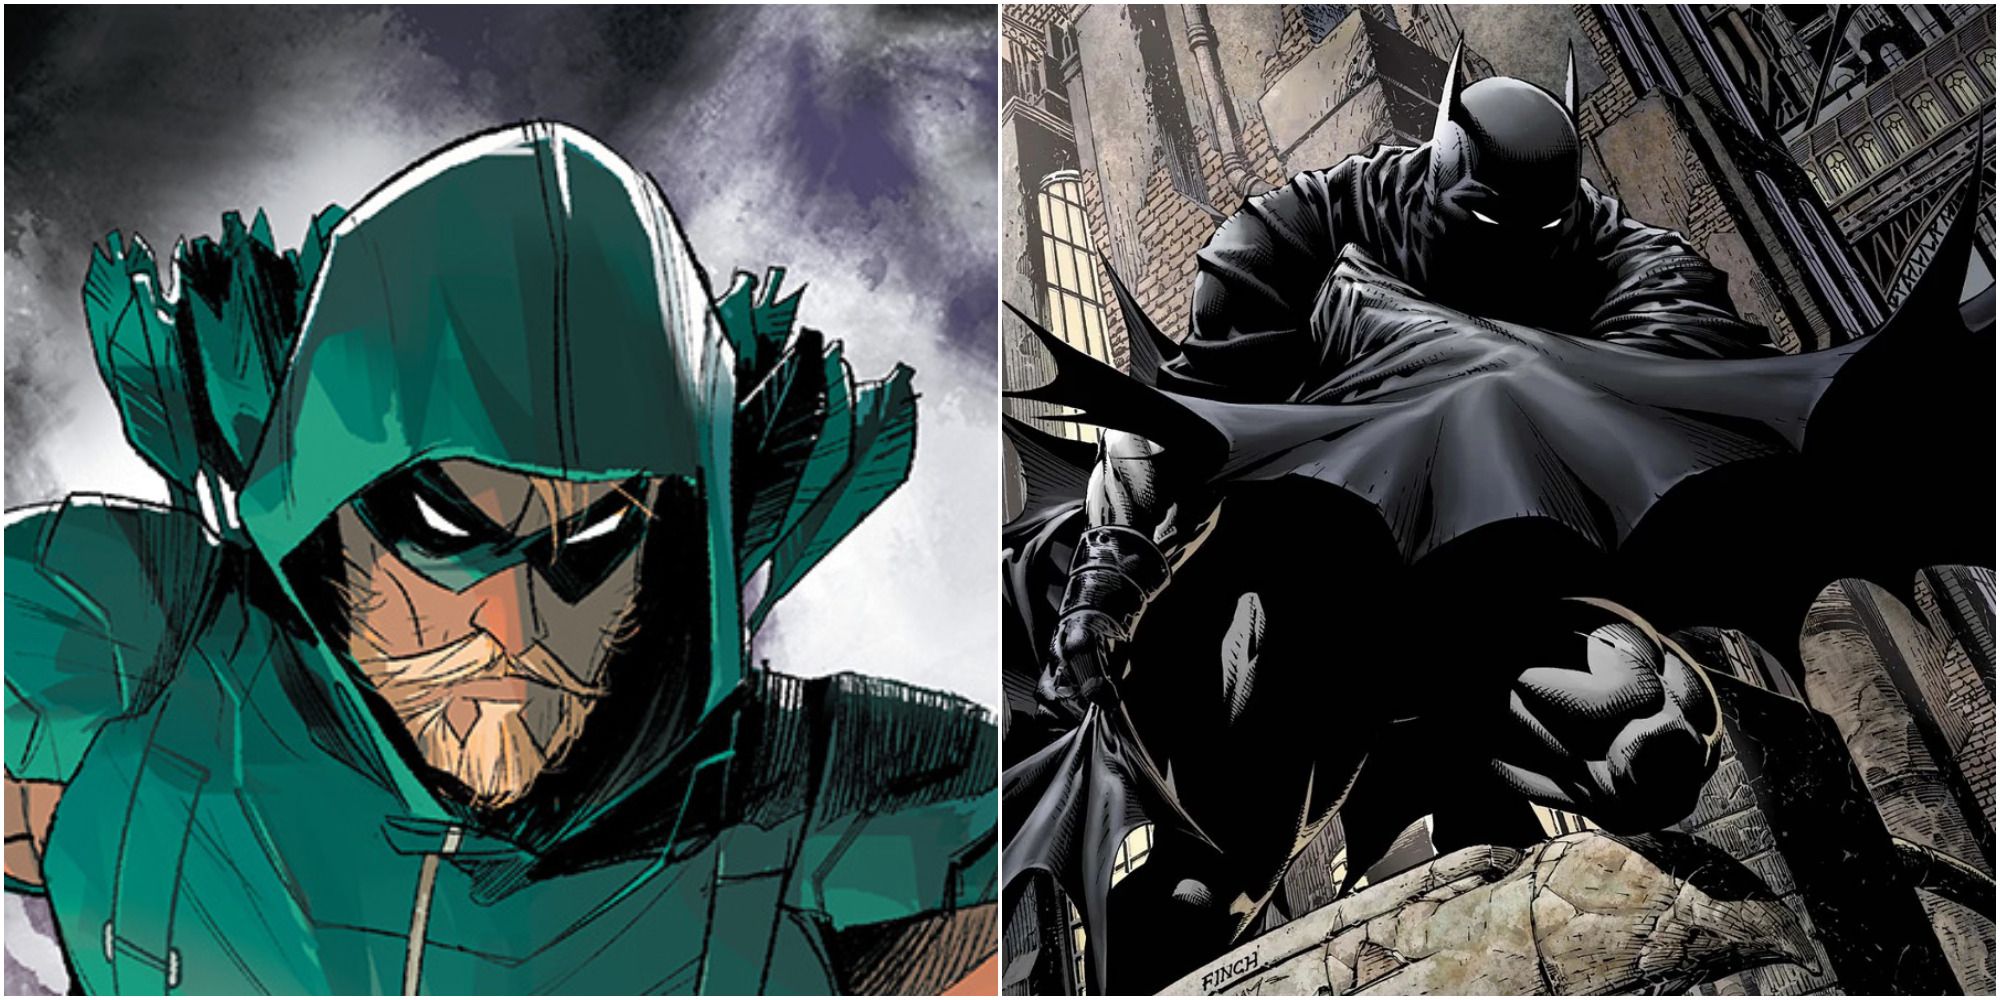 5 Green Arrow Is DC's Best Street-Level 5 Why It's Batman)